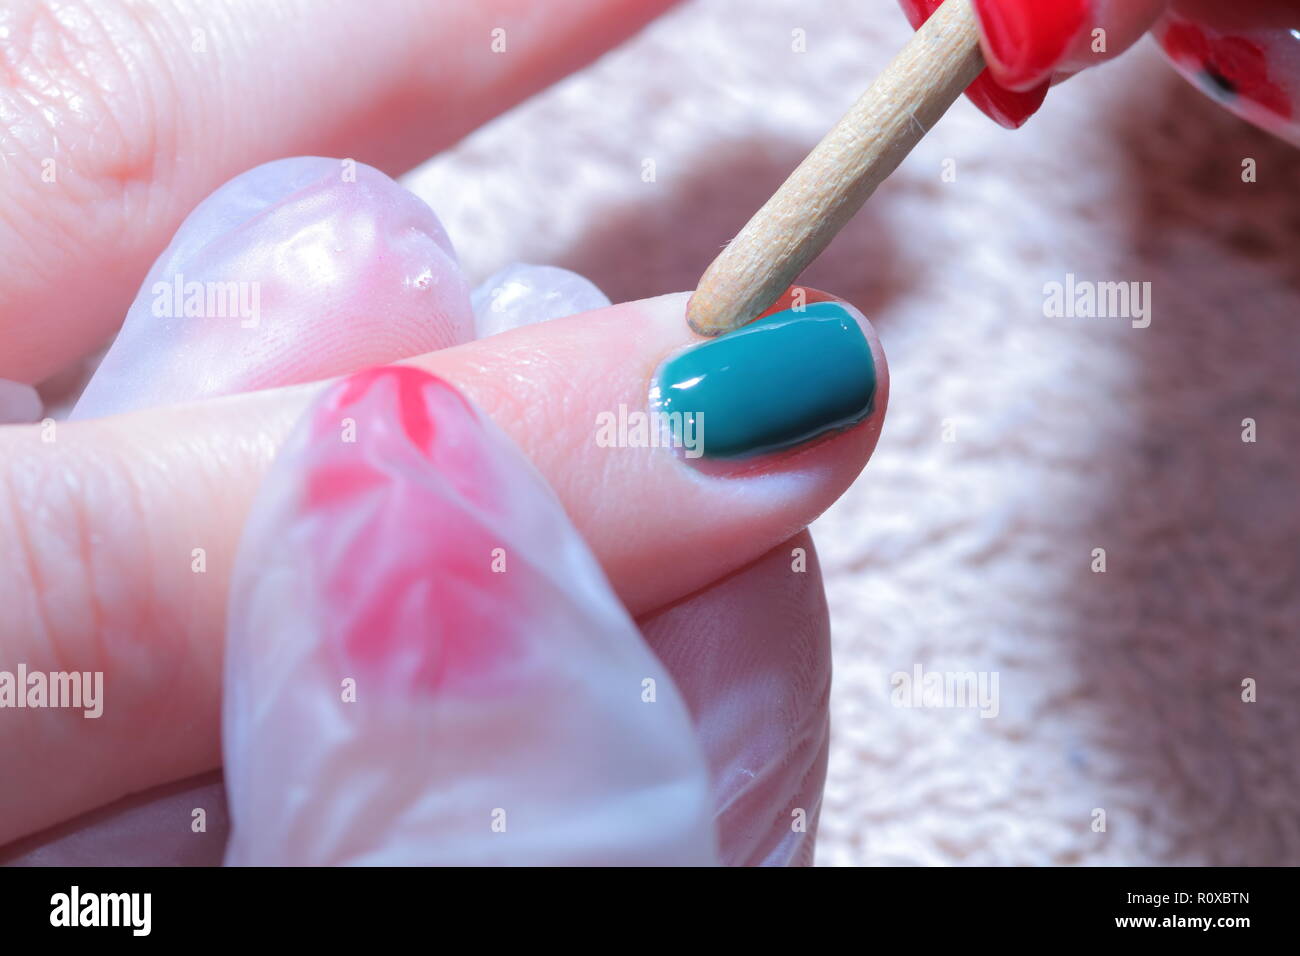 Técnico de uñas aplicando esmalte de uñas de color verde. Foto de stock